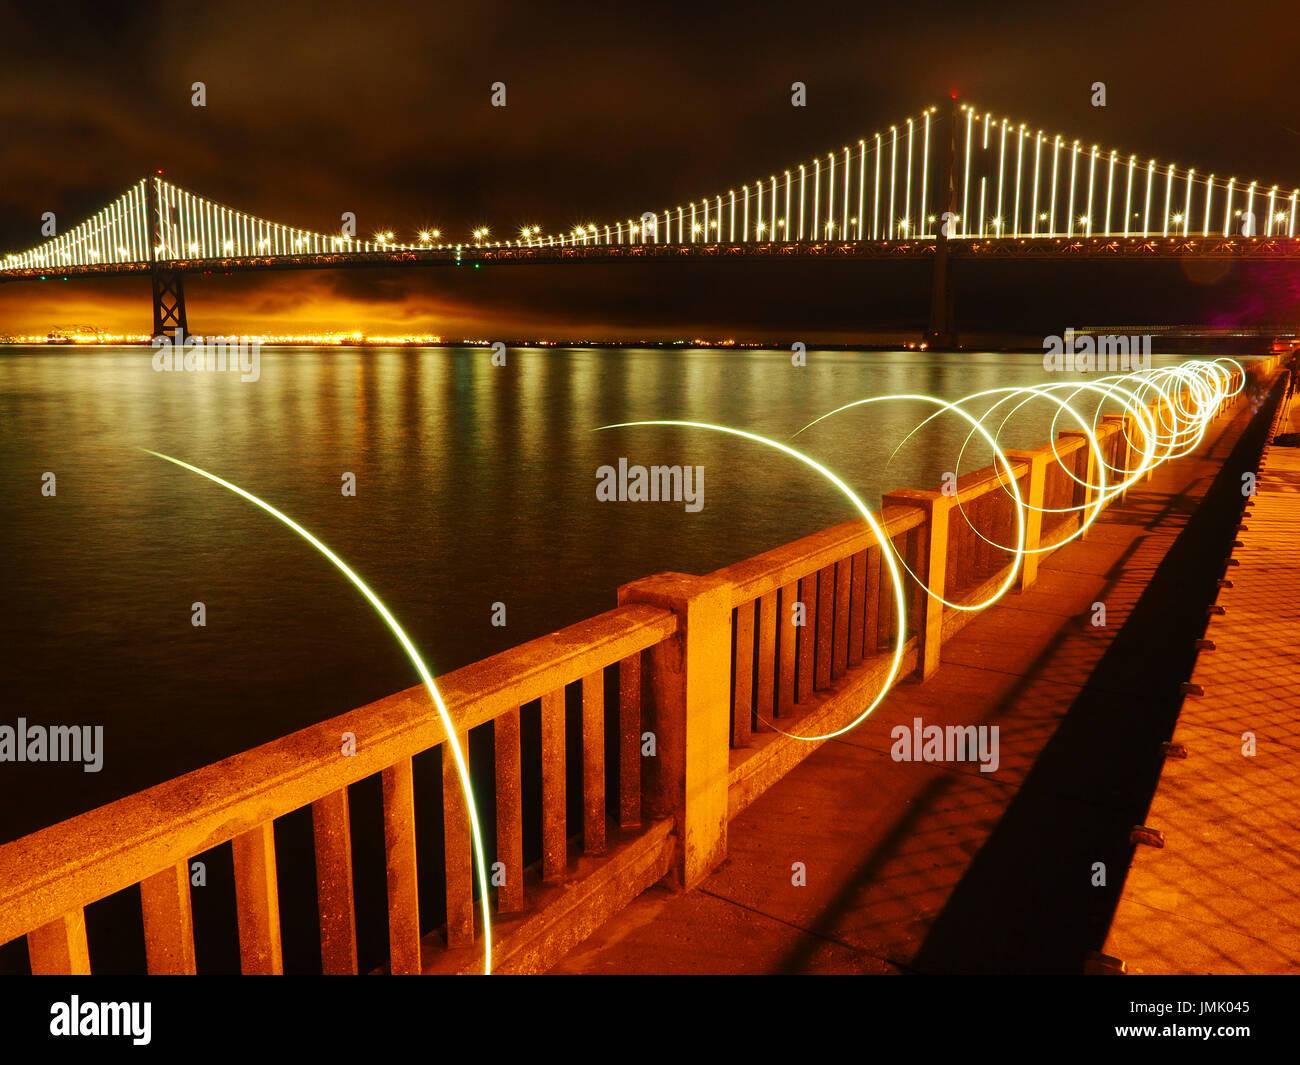 Puente de la Bahía de nuevo por la noche como se ve desde el embarcadero de San Francisco, California, con pintura de luz circular en primer plano Foto de stock